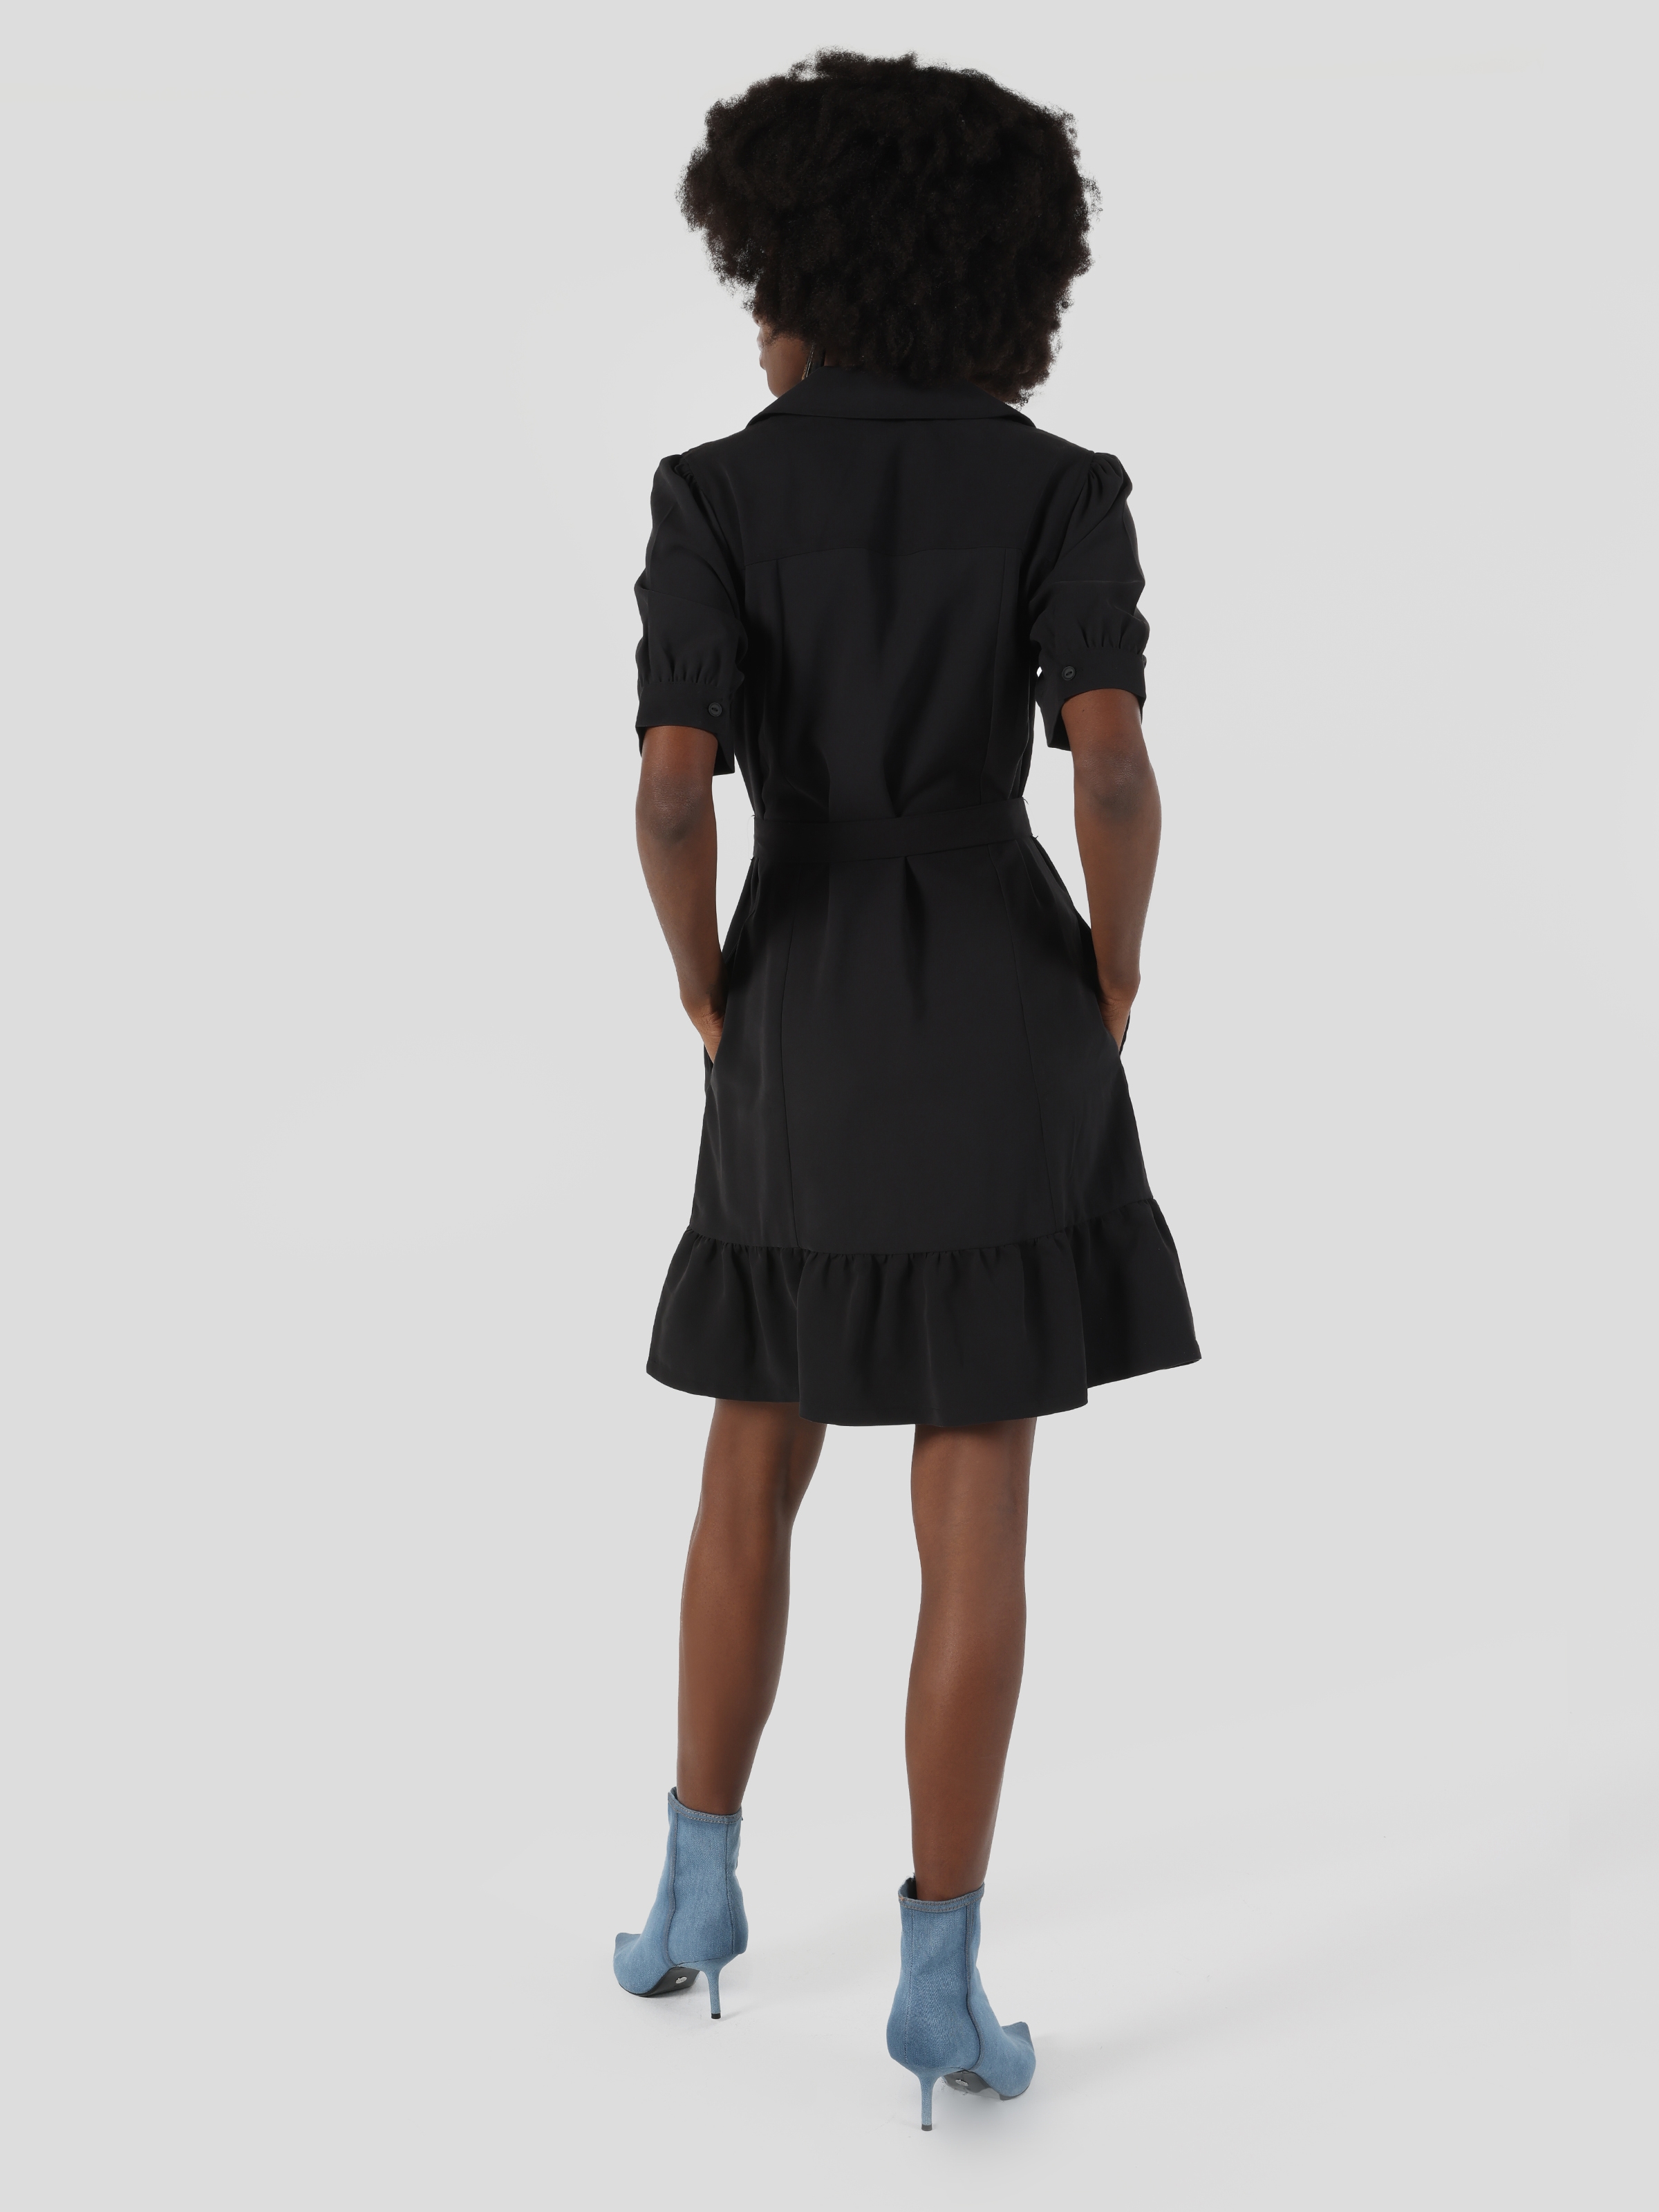 Afficher les détails de Robe Femme Noire Plissée Coupe Régulière Avec Ceinture